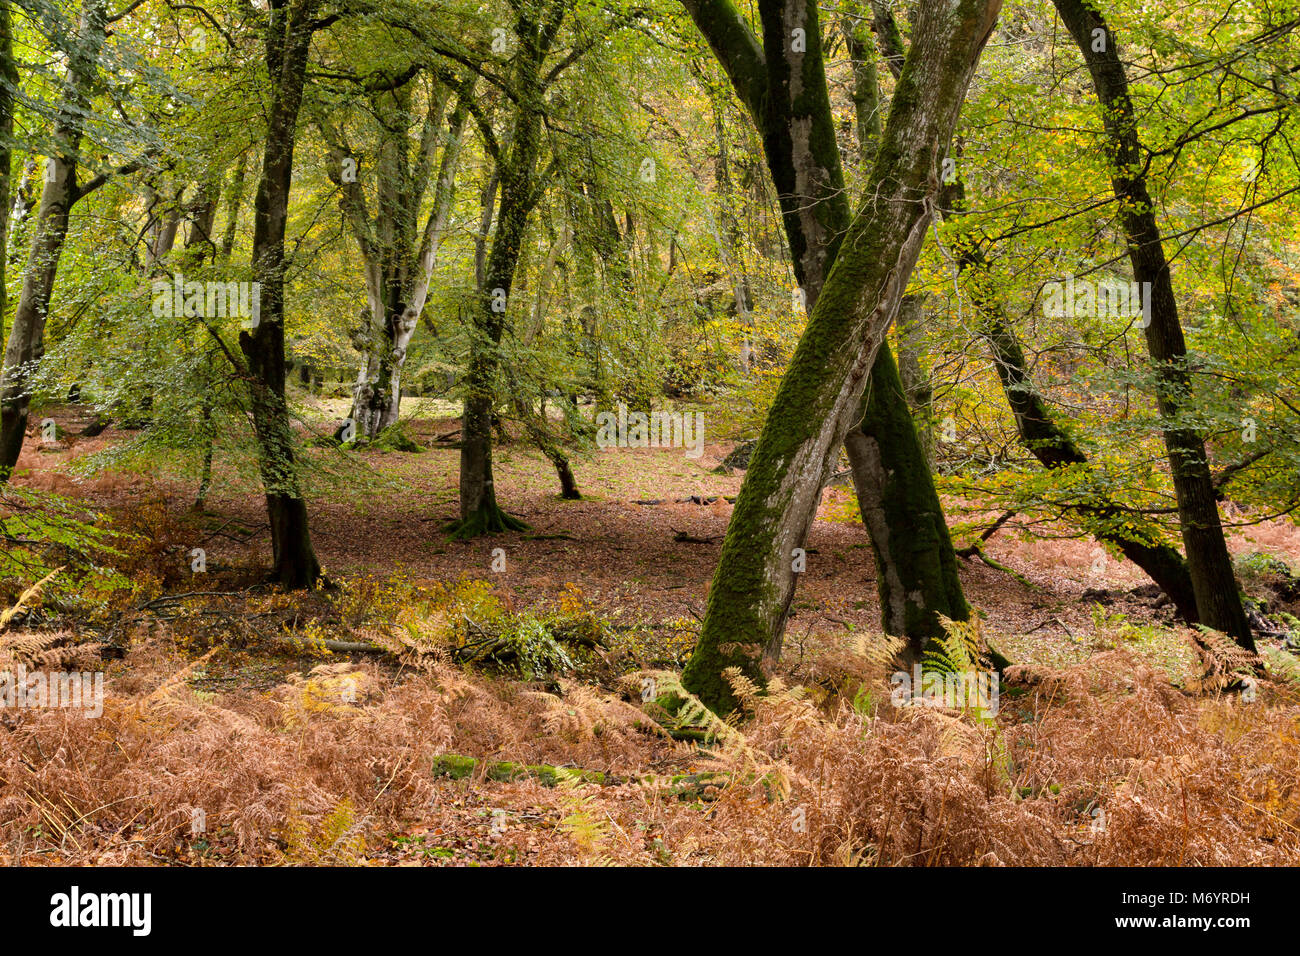 Arboles retorcidos y helechos durante finales de otoño en New Forest, Hampshire, Reino Unido Foto de stock